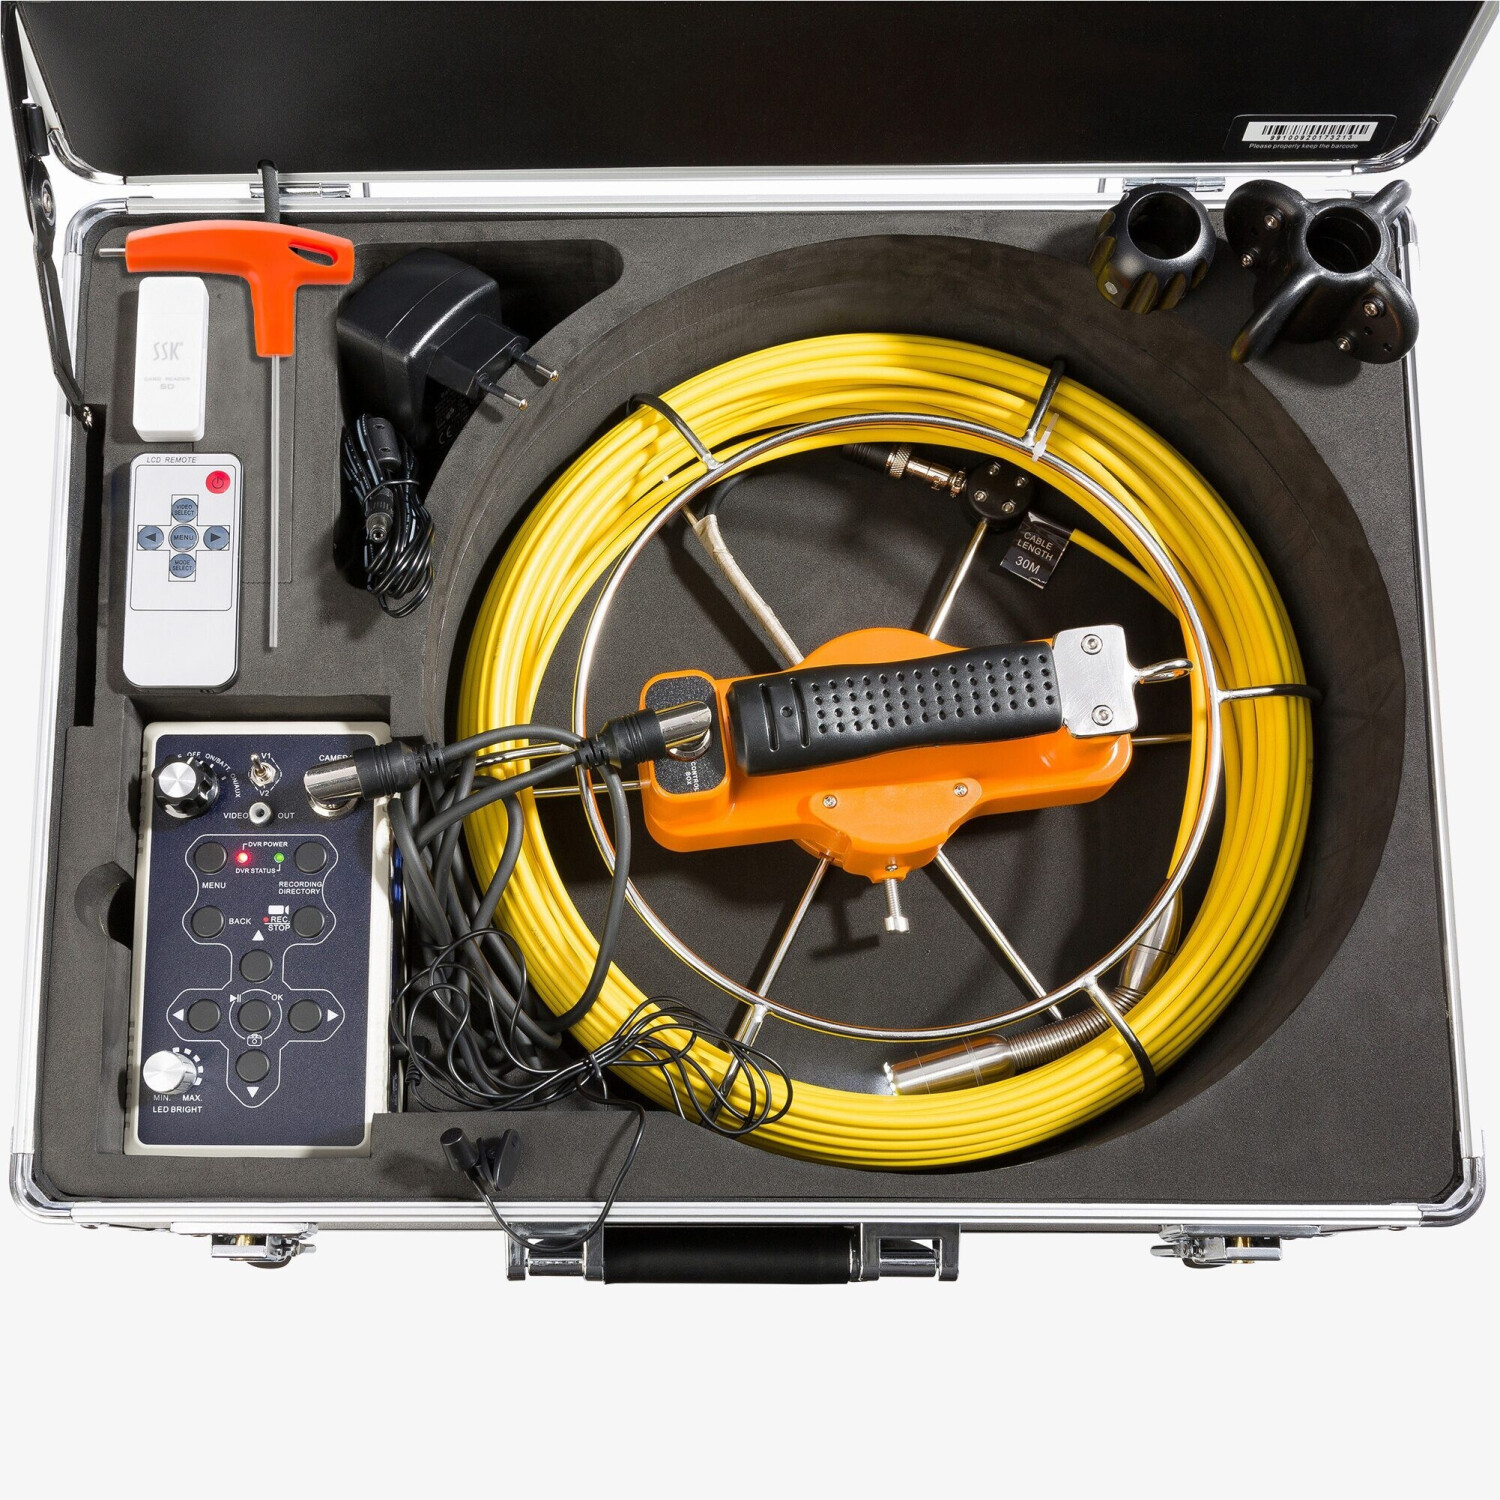 AREBOS Endoskop, Kanalkamera, 30 m, mit USB Anschluss, IP68 Wasserdicht, Rohrkamera, Mehrfarbig